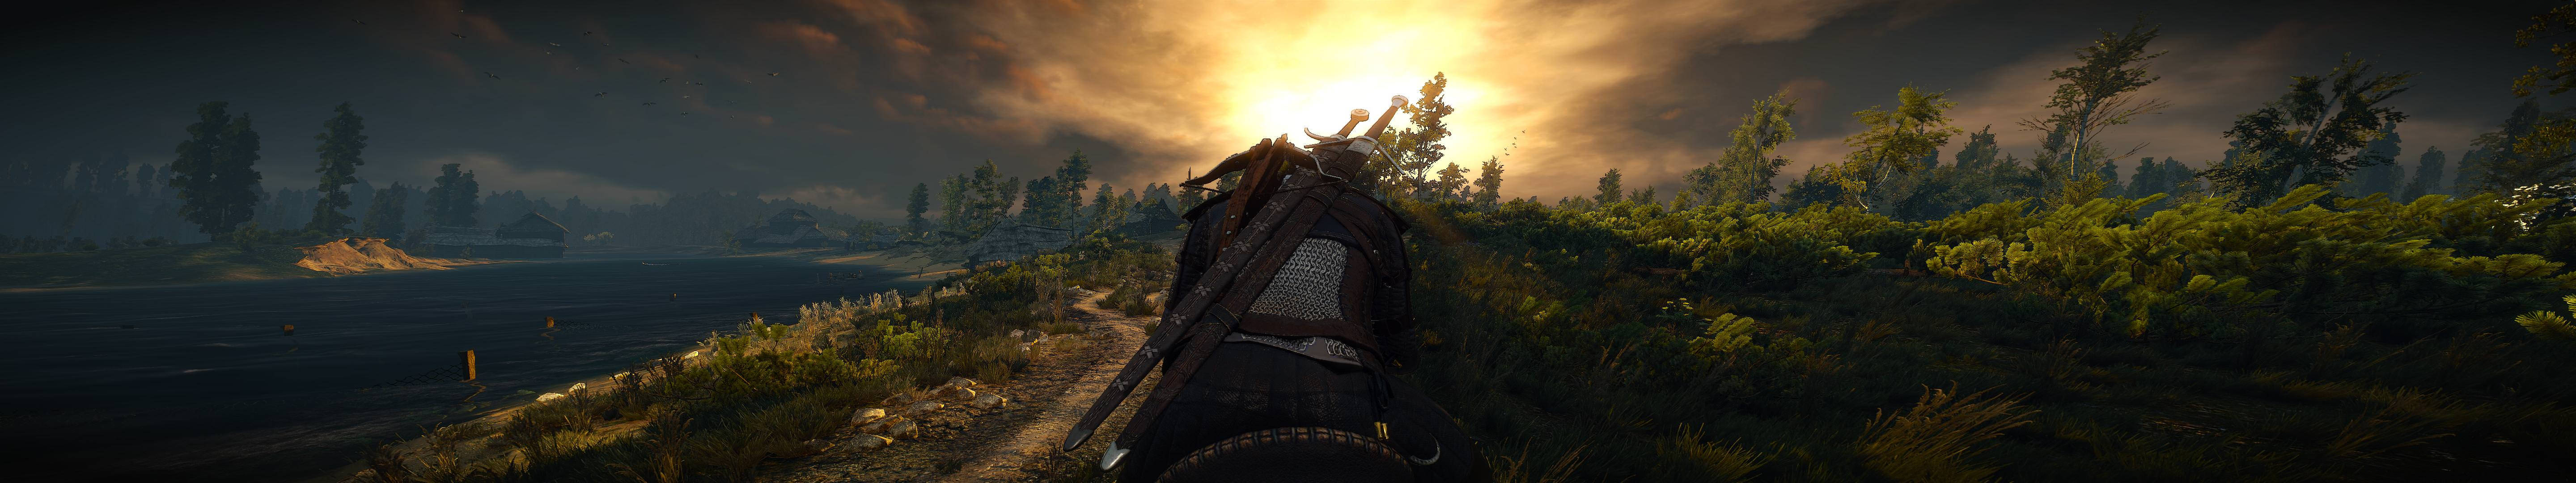 Geraltde Rivia Se Encuentra Solo En Un Bosque Dormido Al Atardecer Fondo de pantalla